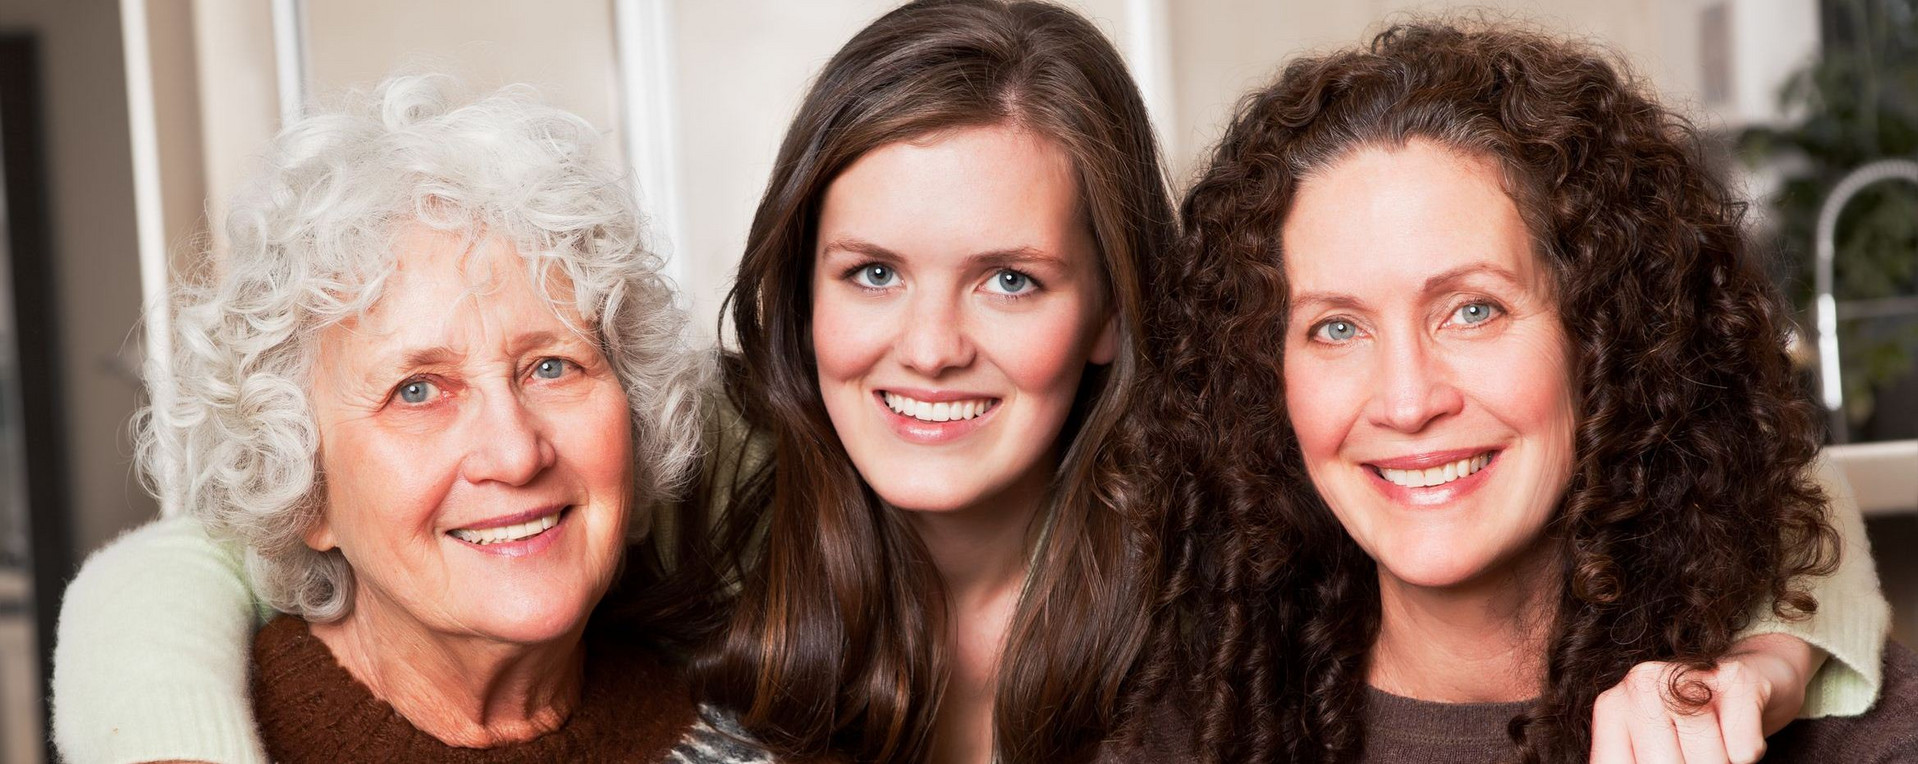 Portraitfoto von Frauen aus drei Generationen